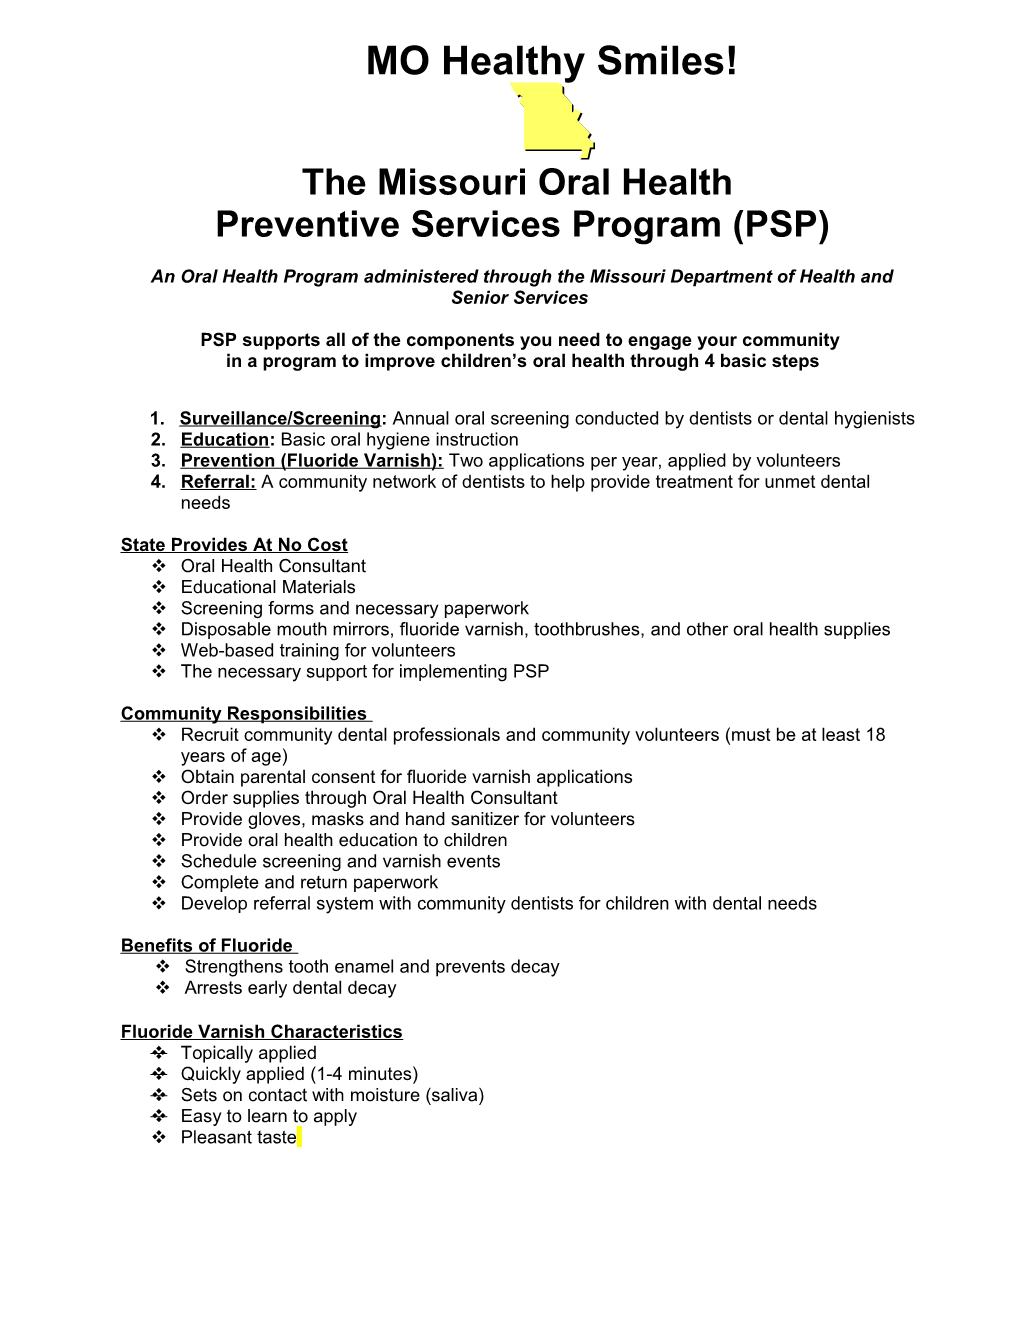 Missouri Oral Health Preventive Services Program